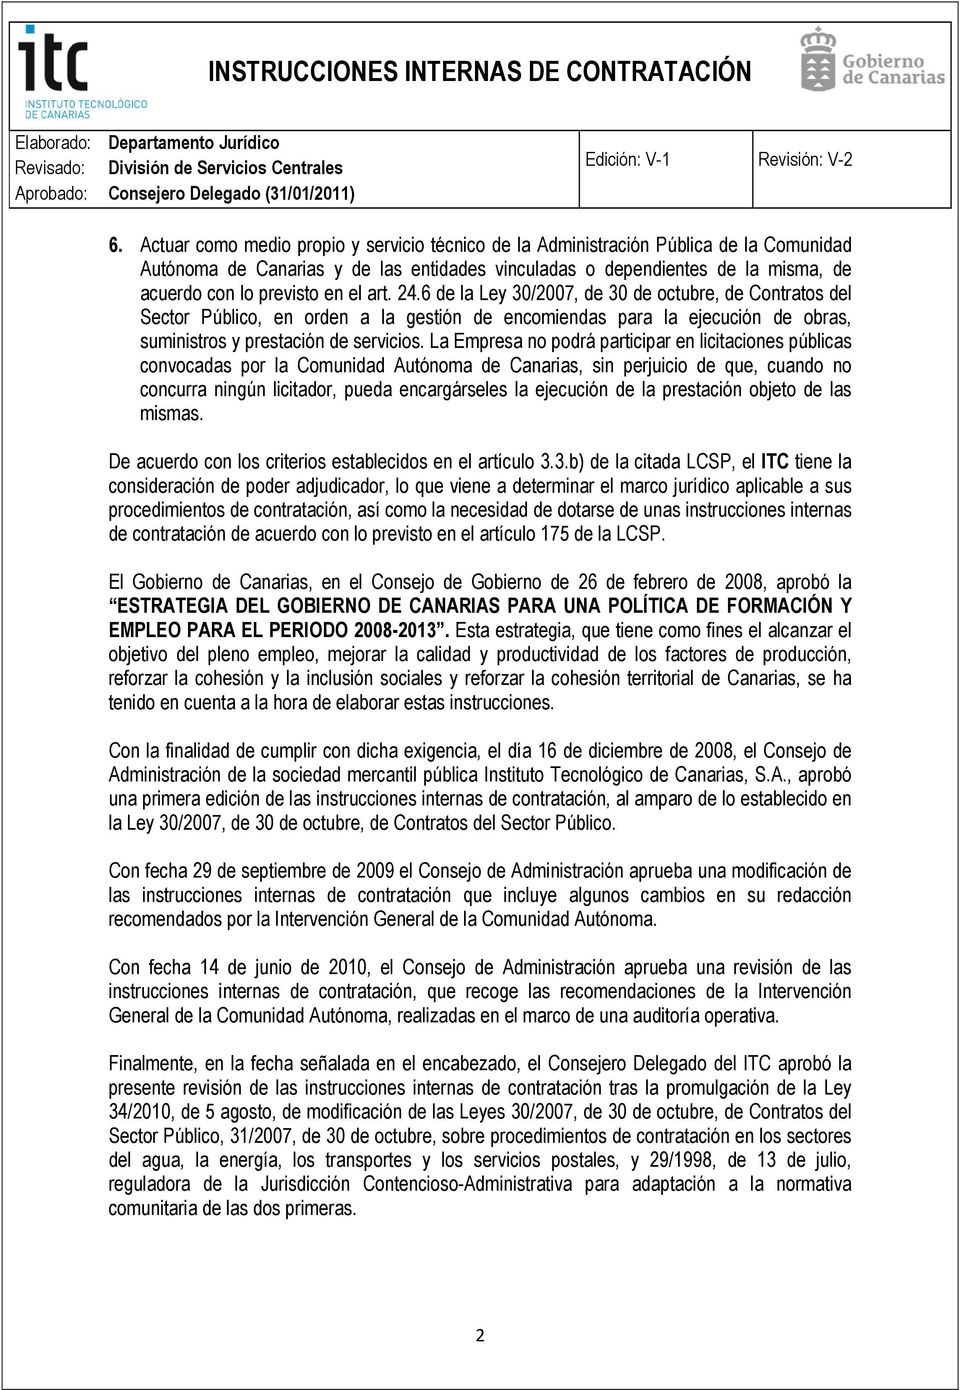 La Empresa no podrá participar en licitaciones públicas convocadas por la Comunidad Autónoma de Canarias, sin perjuicio de que, cuando no concurra ningún licitador, pueda encargárseles la ejecución